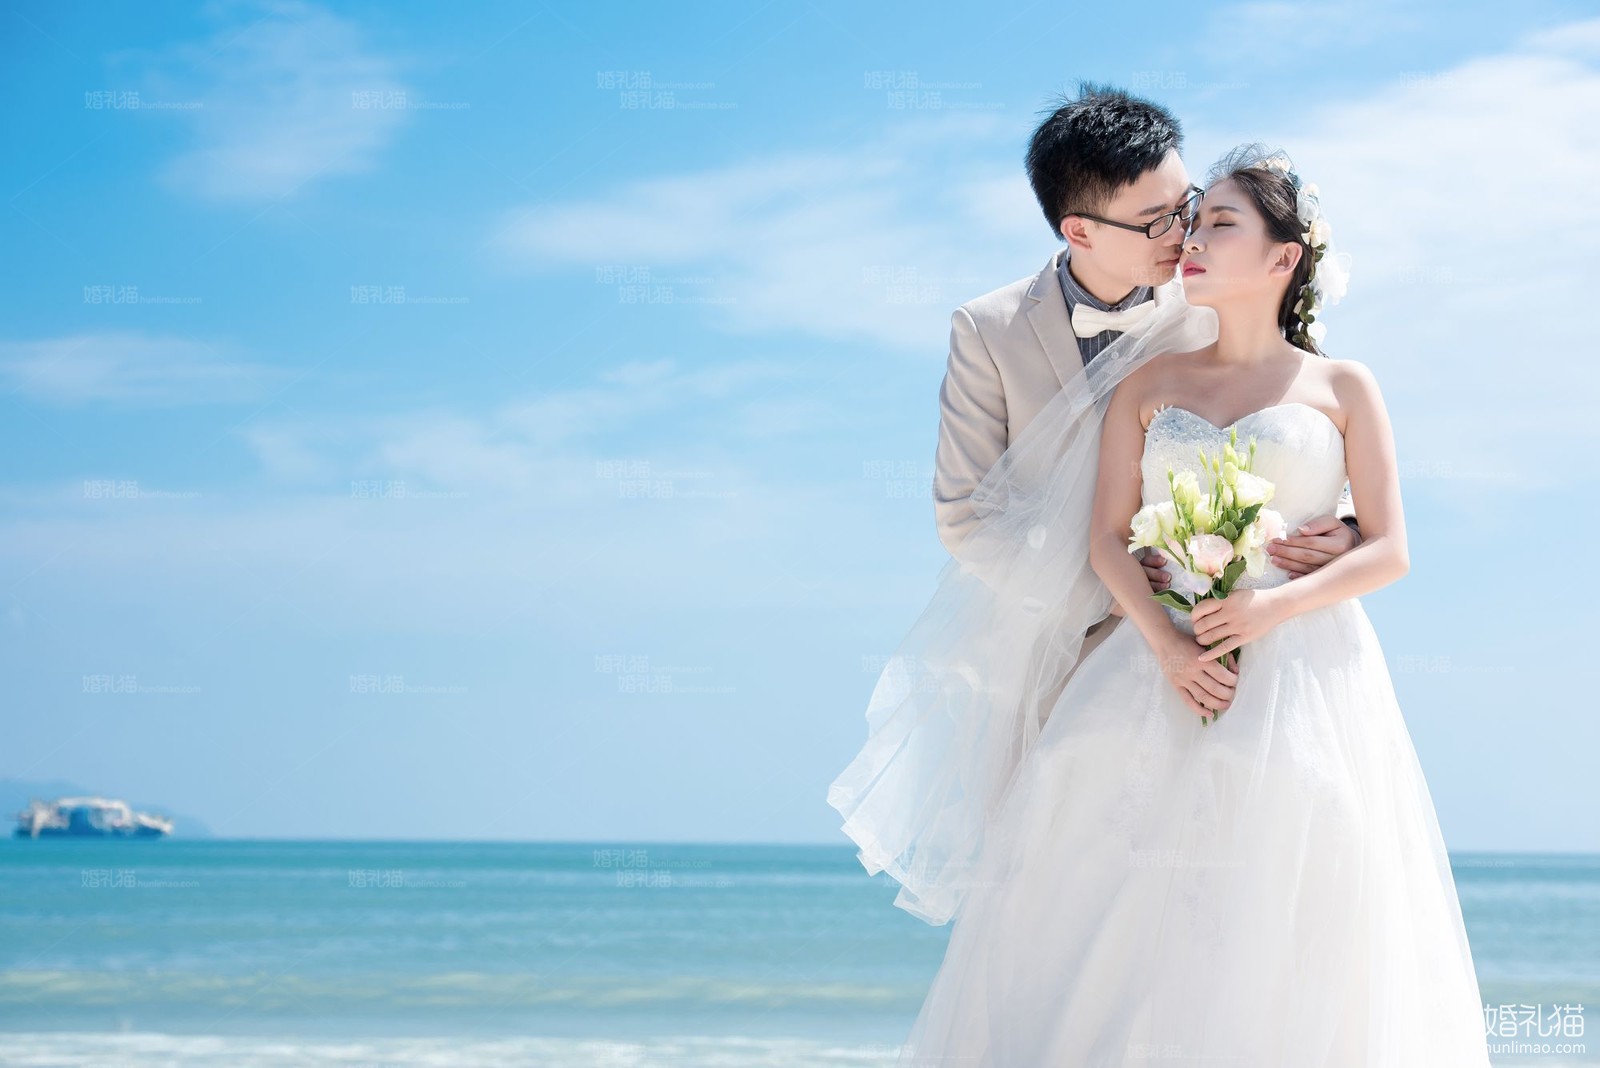 2017年4月深圳结婚照,,深圳婚纱照,婚纱照图片